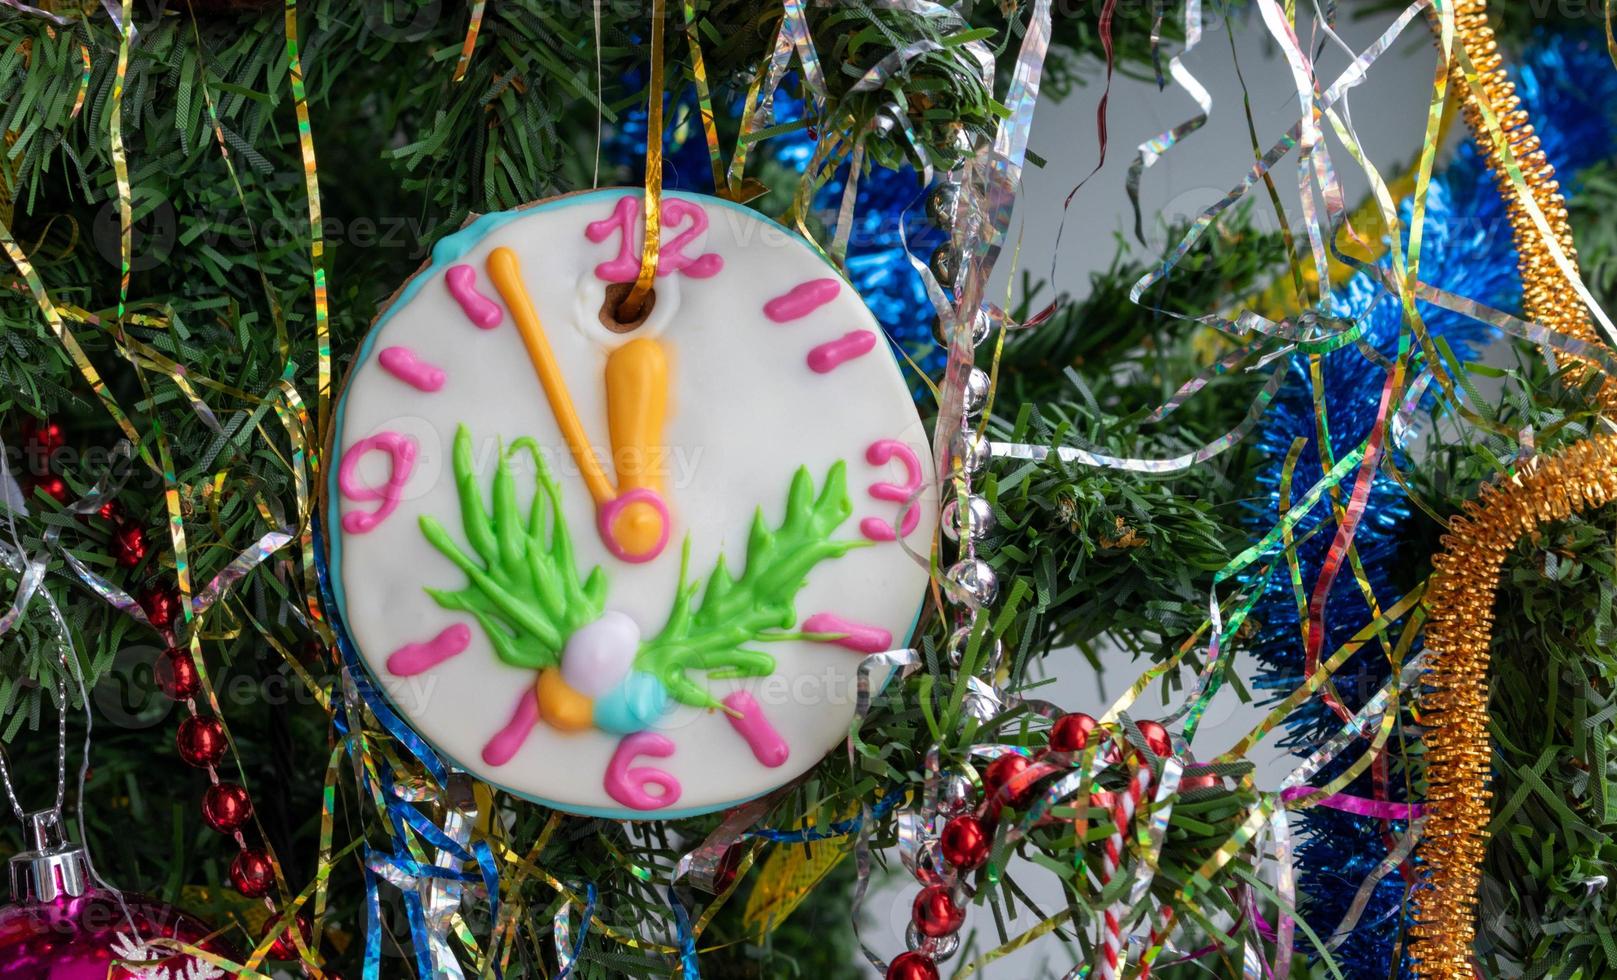 Nahaufnahme eines Weihnachtsbaums mit Ornamenten aus Kugeln, Schneeflocken, Lametta, Girlanden und einer großen Lebkuchenuhr foto